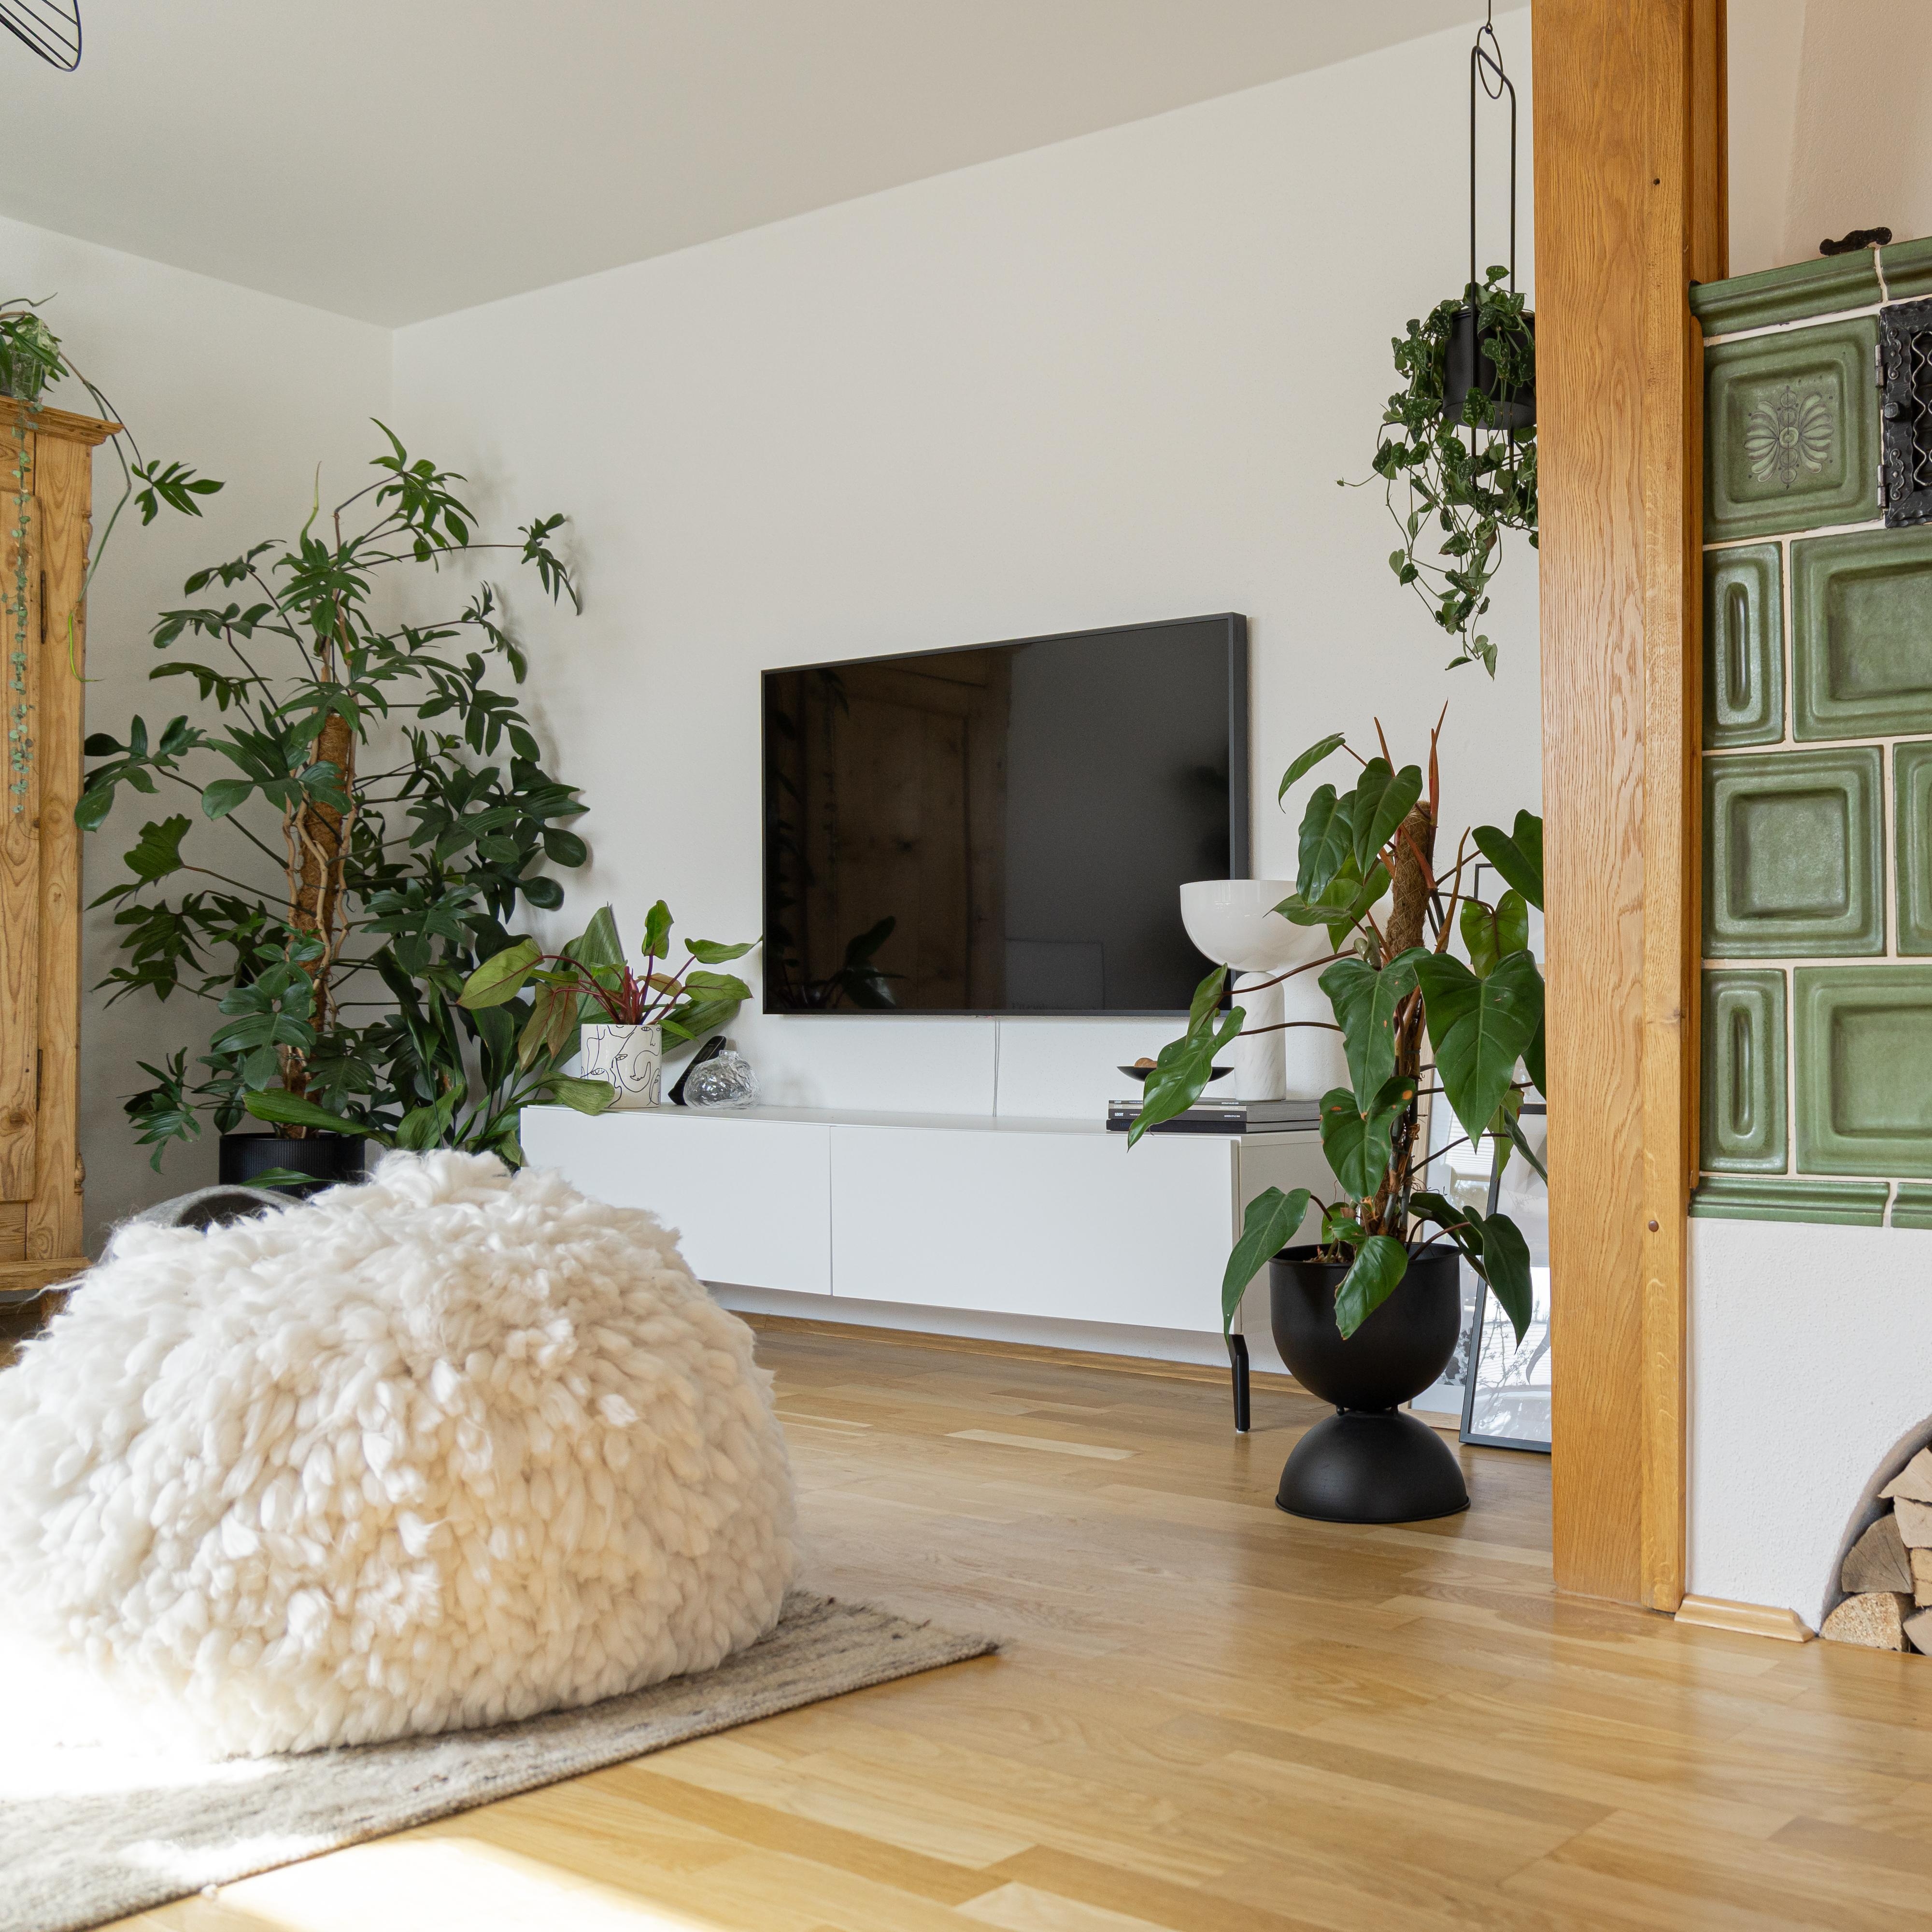 #livingroom#living#wohnzimmer#wohnen#tv#leben#deko#whiteliving#room#pflanzen#plants#grünefreunde#plant#dekorieren